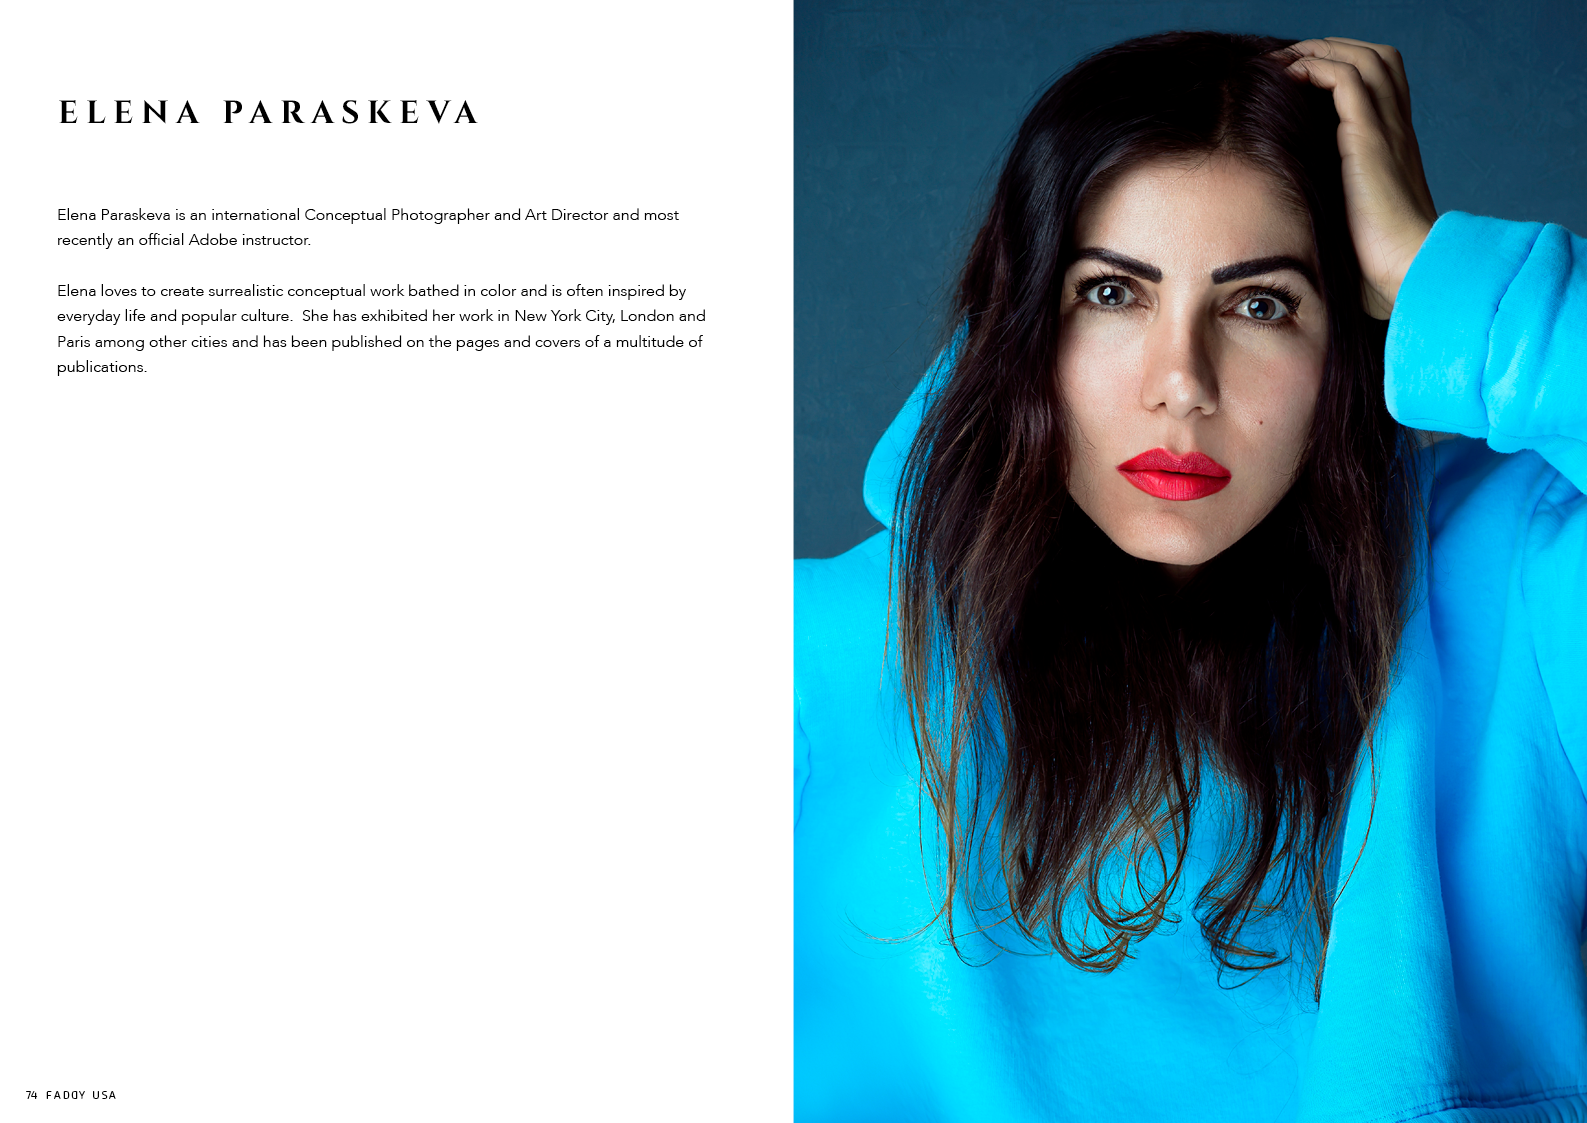 Inside cover : ELENA PARASKEVA